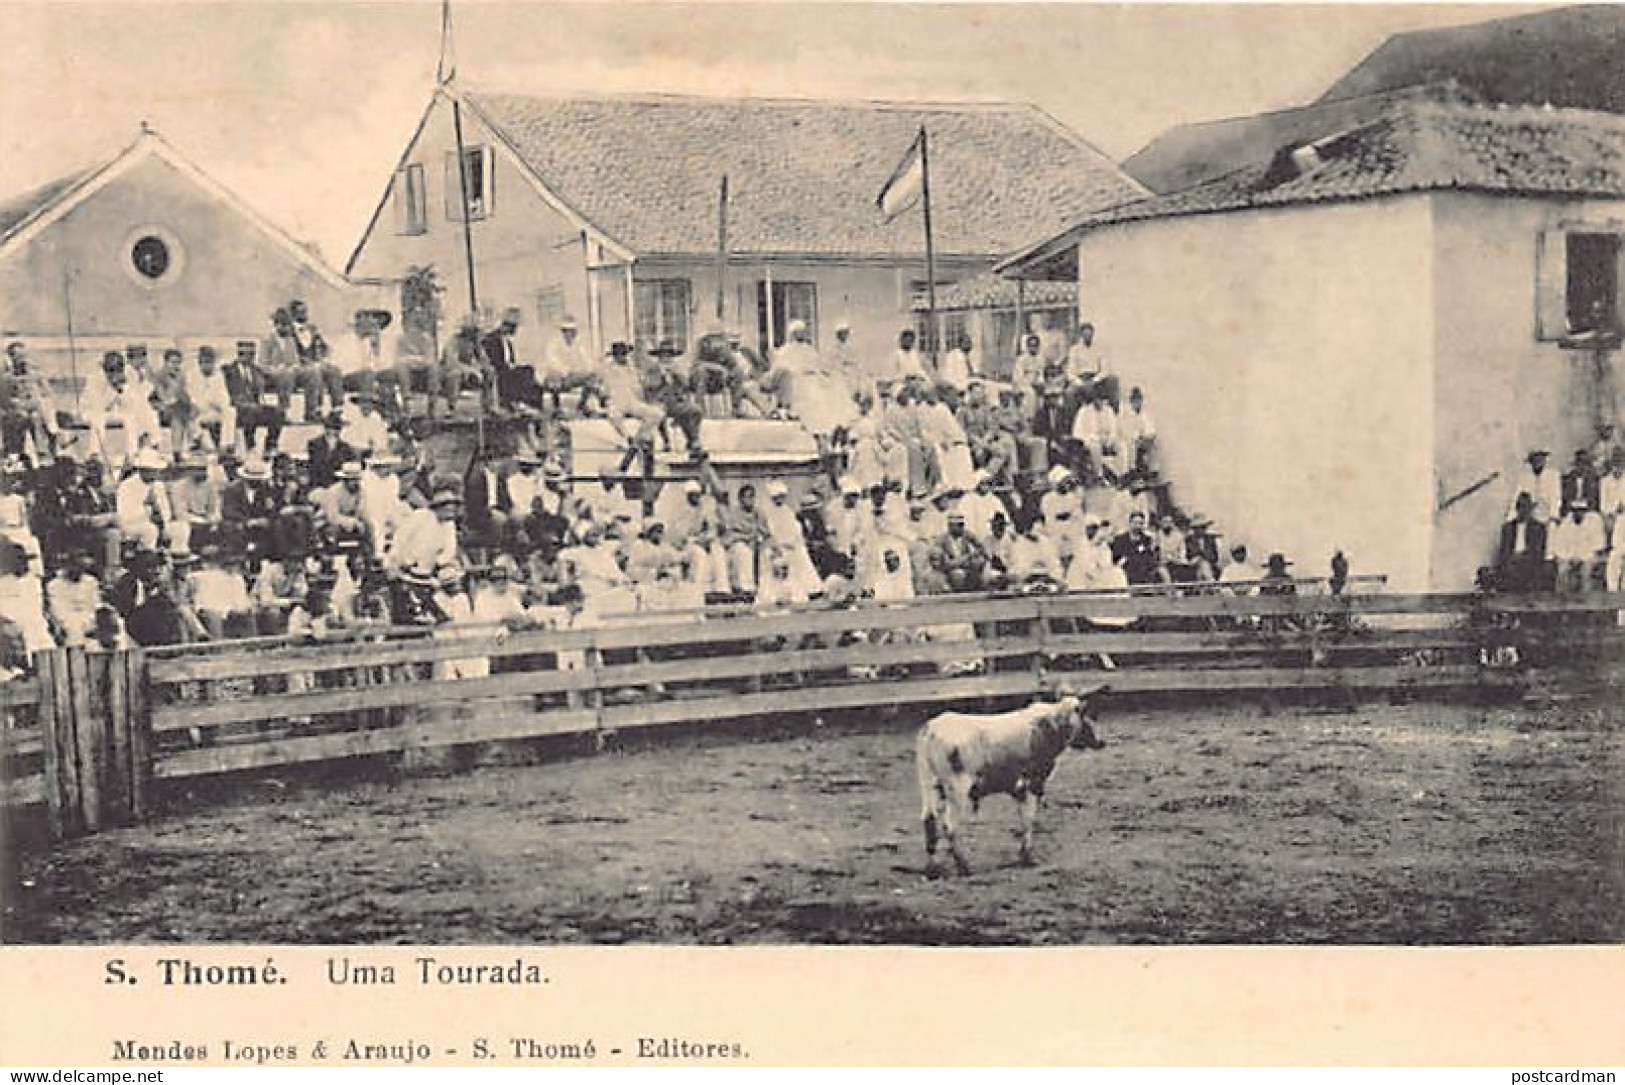 SAO TOME - Uma Tourada - Bullfight - Publ. Mendes. - Sao Tome Et Principe